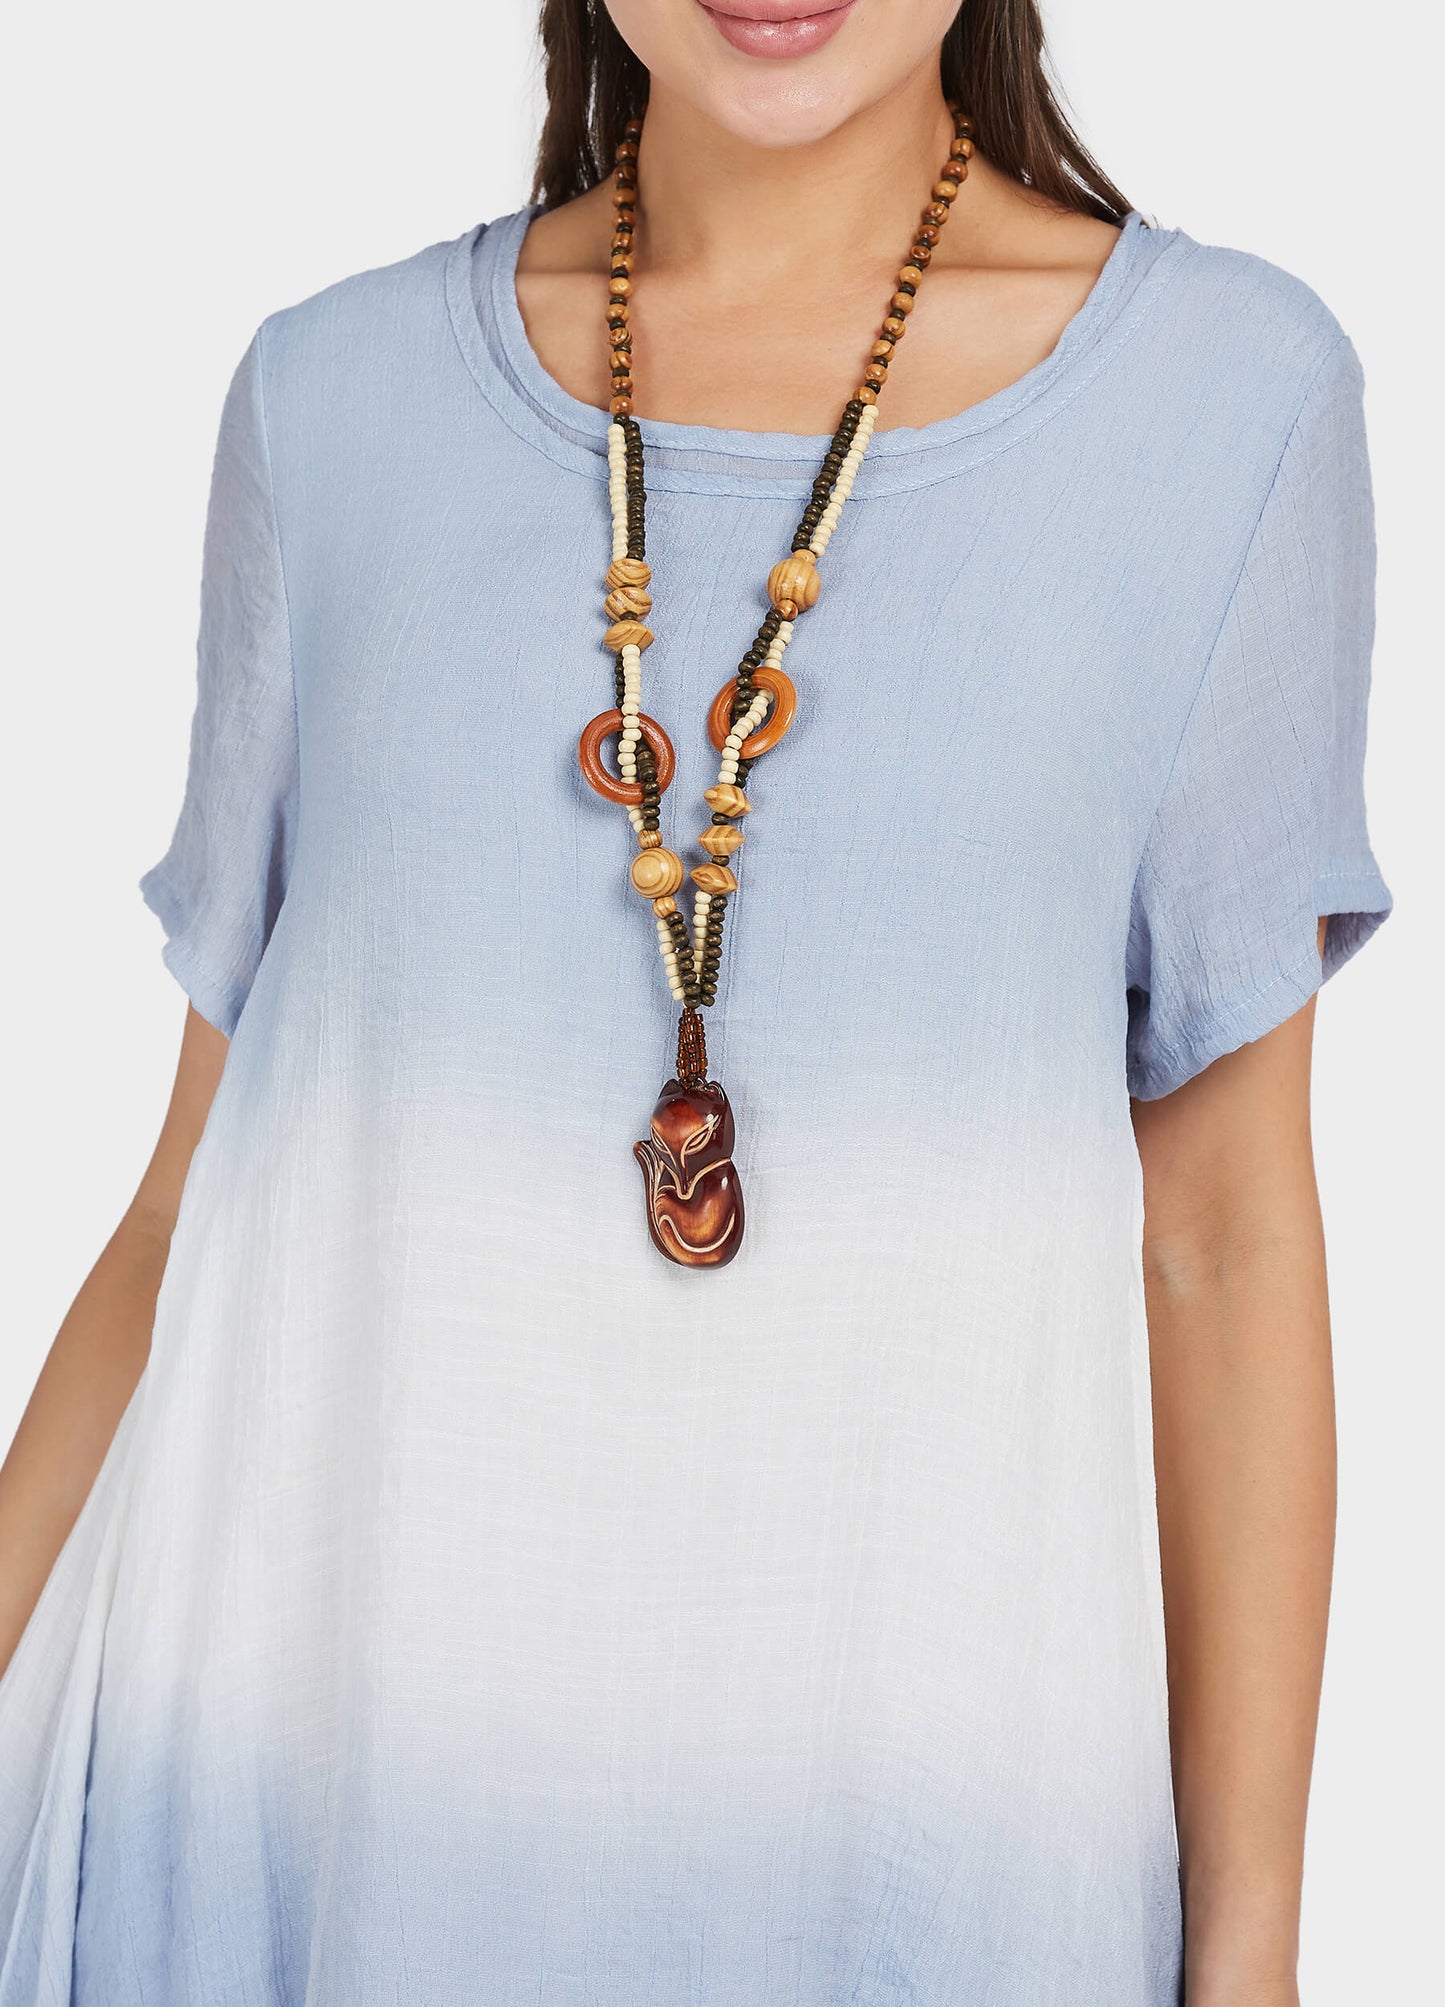 MECALA Women's Linen Scoop Neck Asymmetrical Hem Dress with Wooden Fox Layered Beads Necklace-Blue